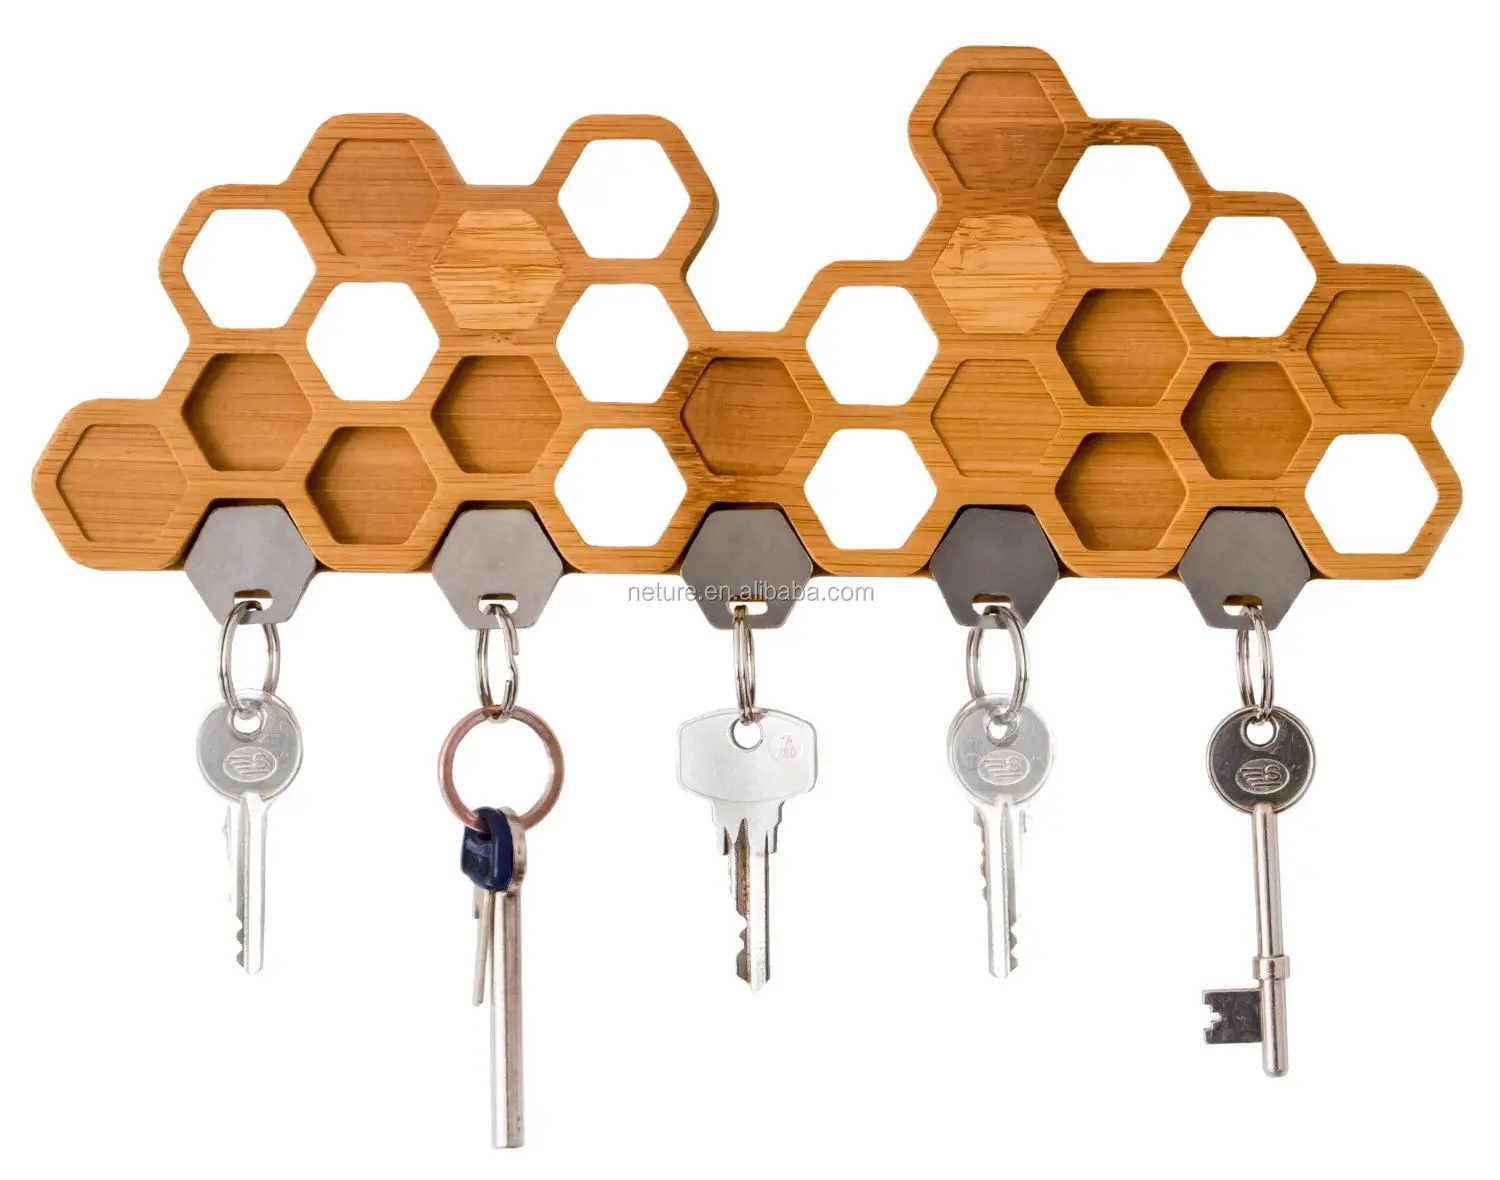 Unique ключ. Соты для ключей. Мебельные крючки для ключей. Wooden Key Holder. Подставки для ключей макет.